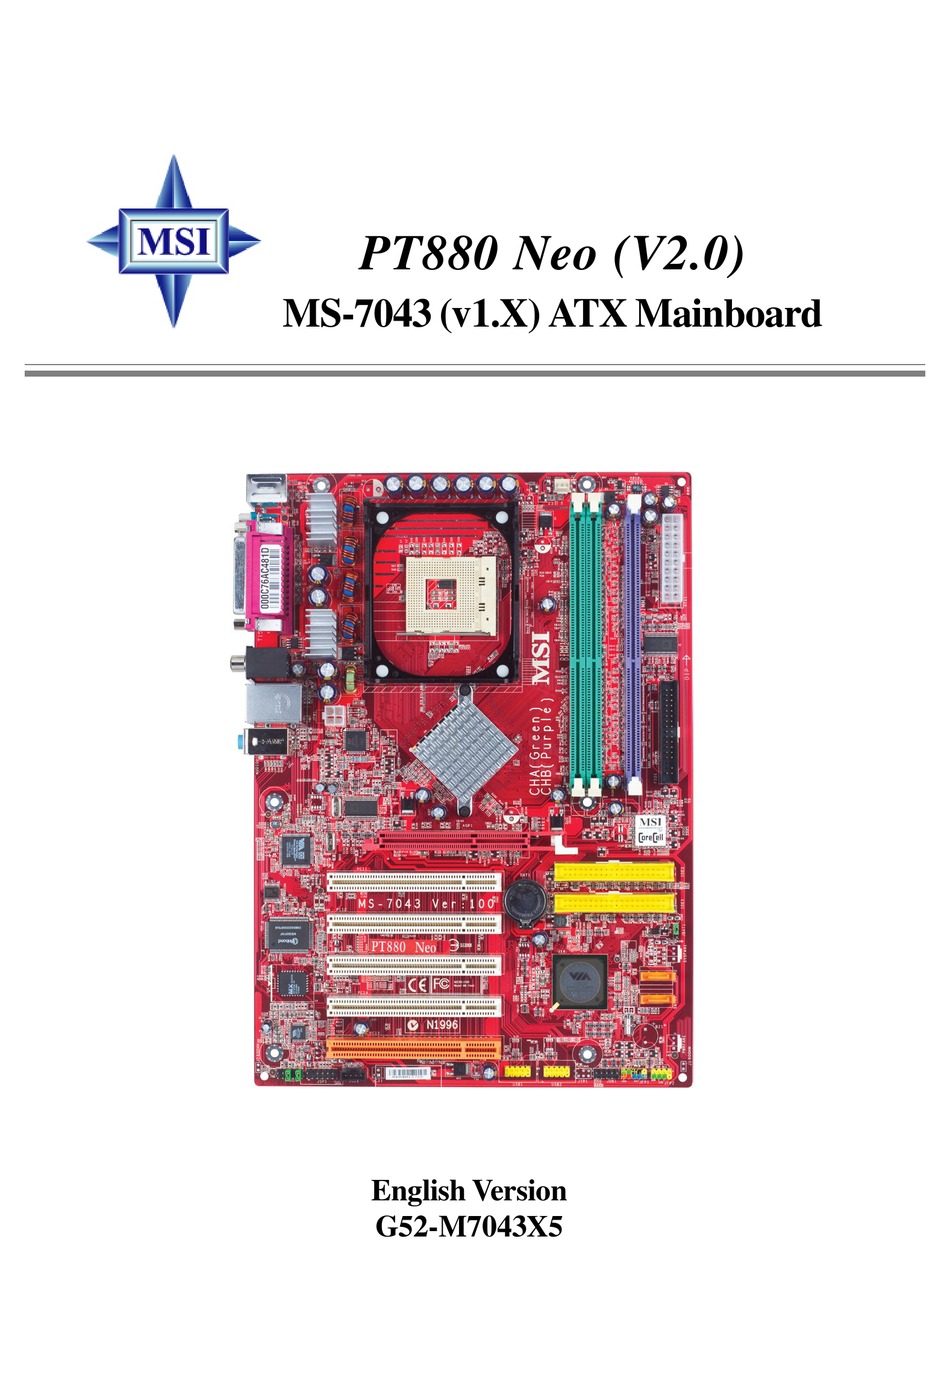 Обновление BIOS ms-7043